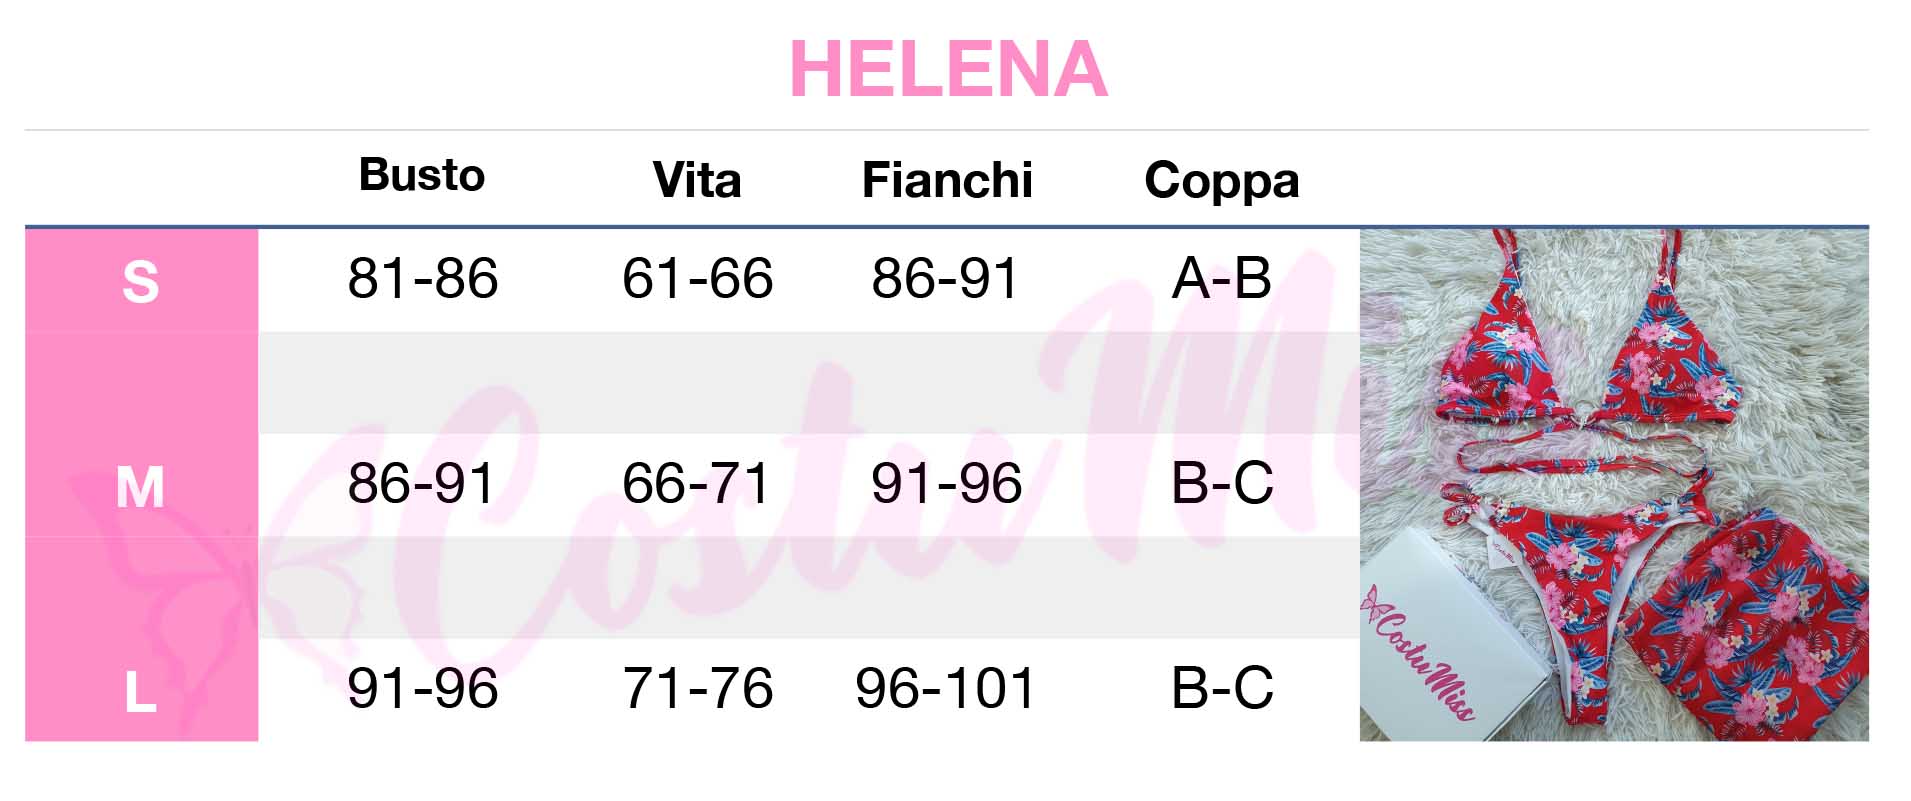 Helena - Costumiss